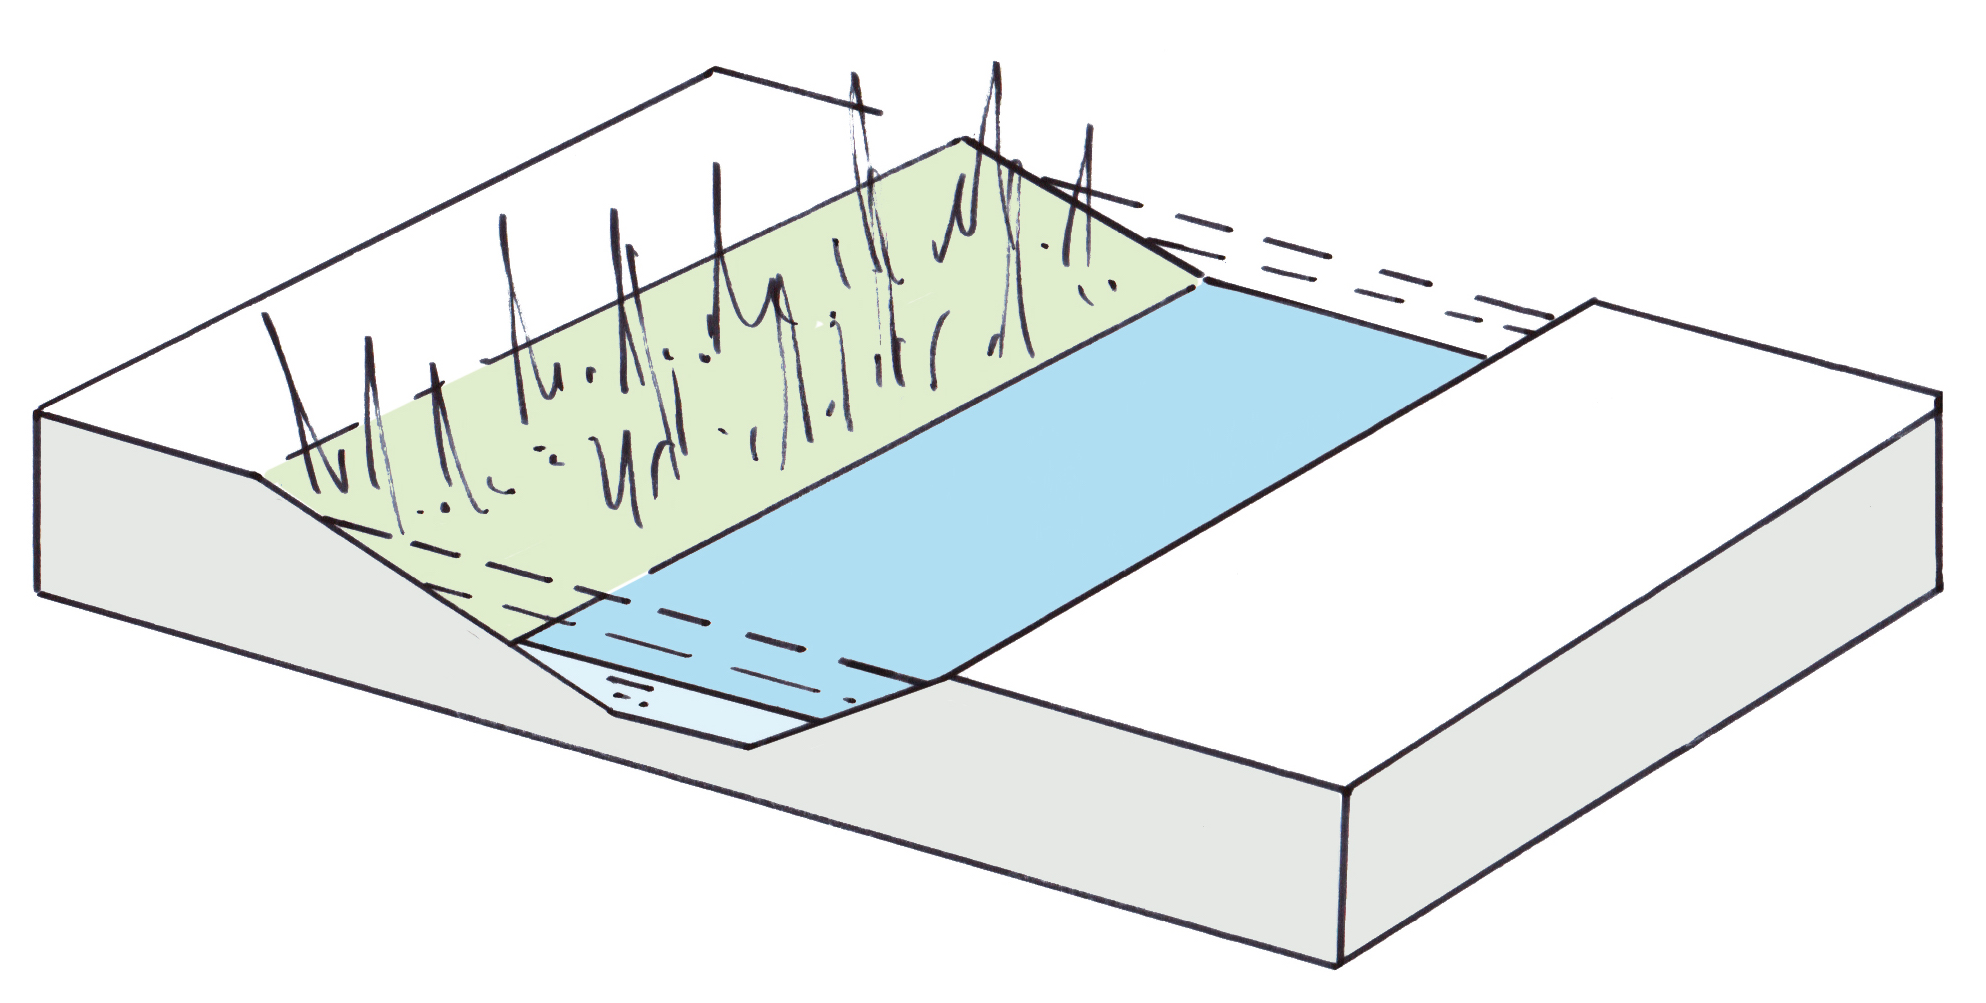 Illustratie van dwarsdoorsnede van sloot met ernaast zone voor natte natuurontwikkeling